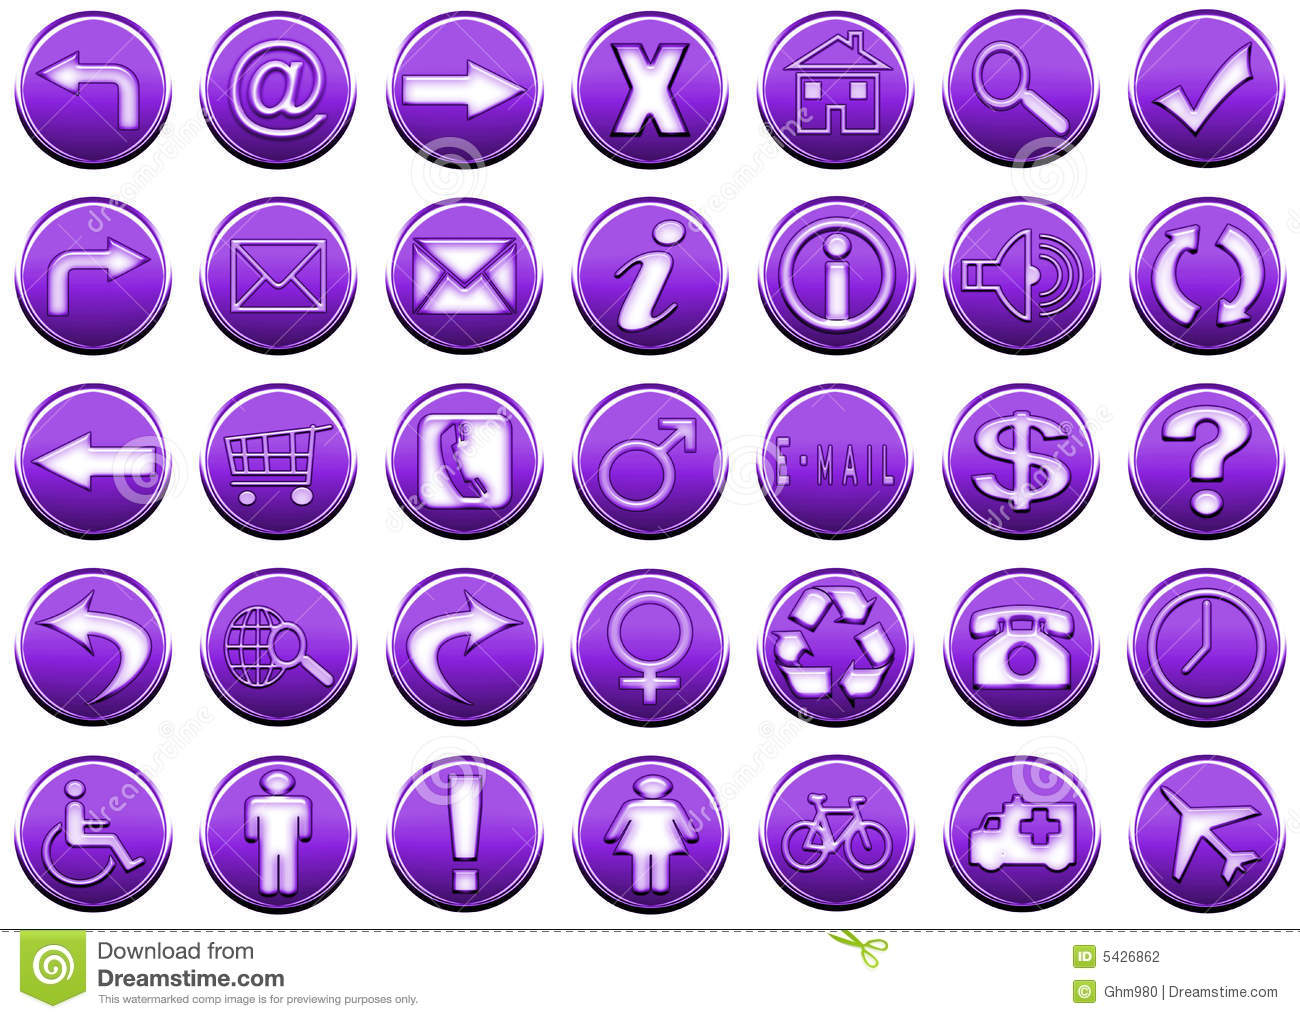 6 Purple Icon Sets Images